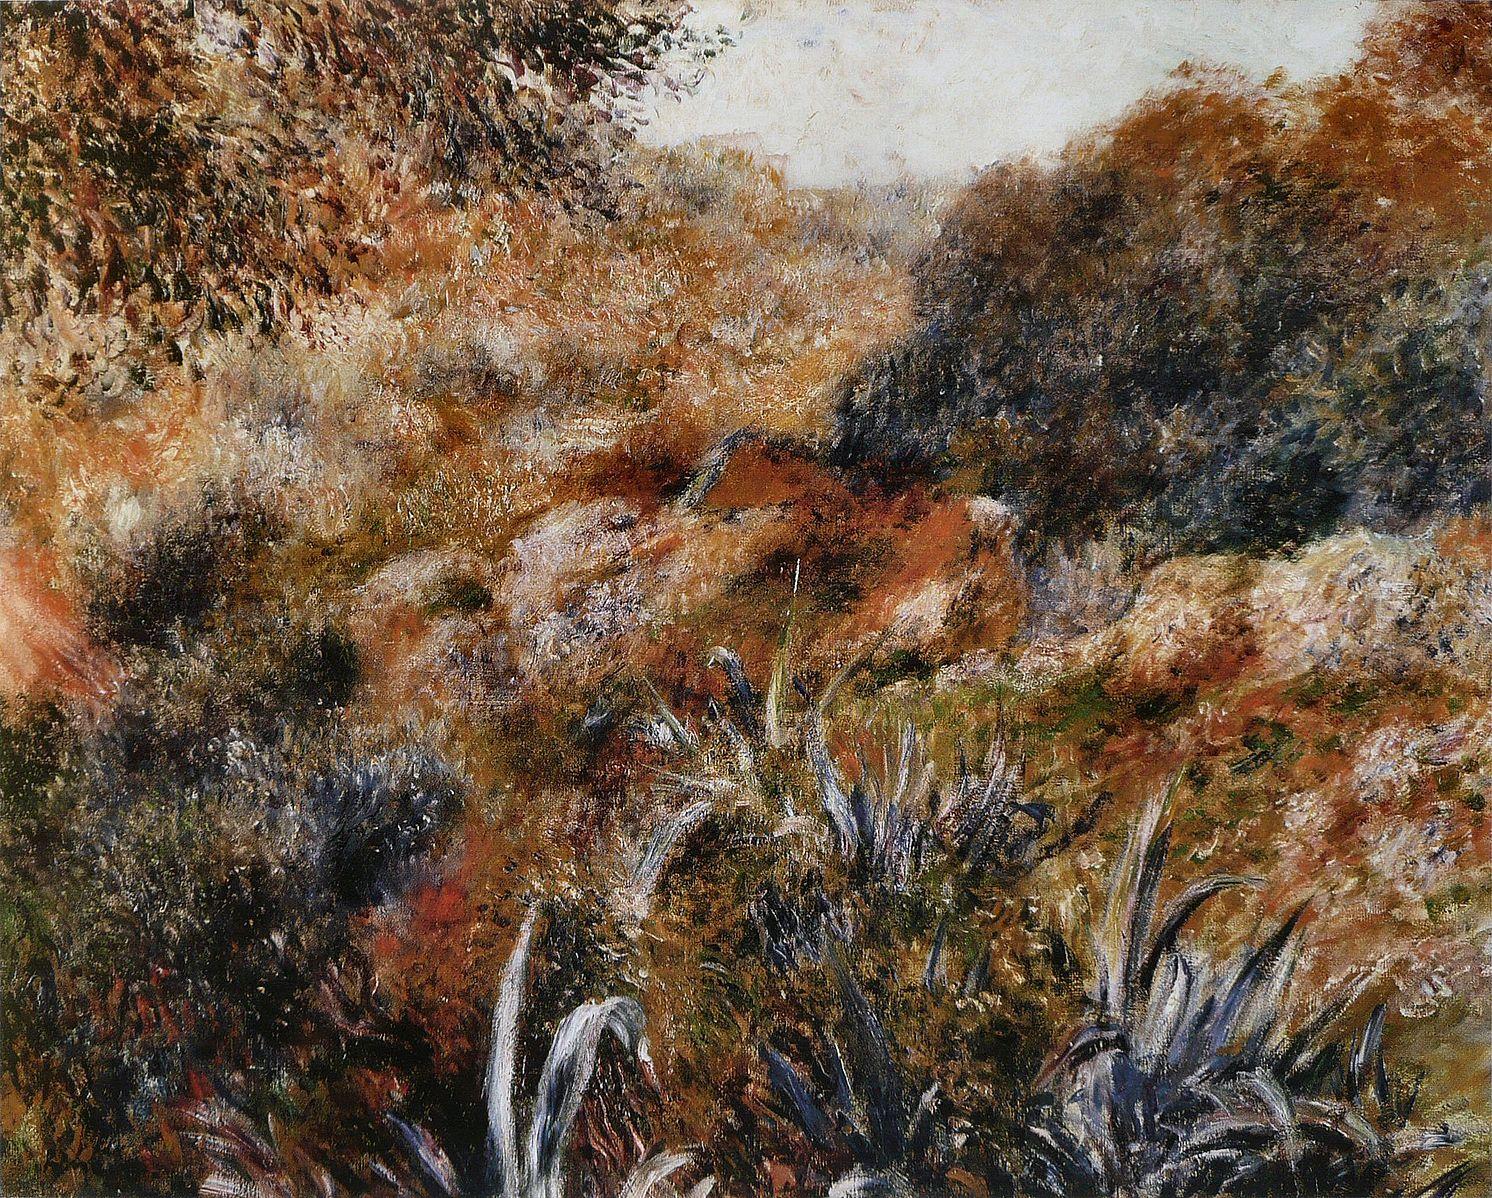 Pierre-Auguste Renoir (1841-1919). Paysage algérien, le ravin de la femme sauvage, 1881. Huile sur toile. Paris, musée d’Orsay.